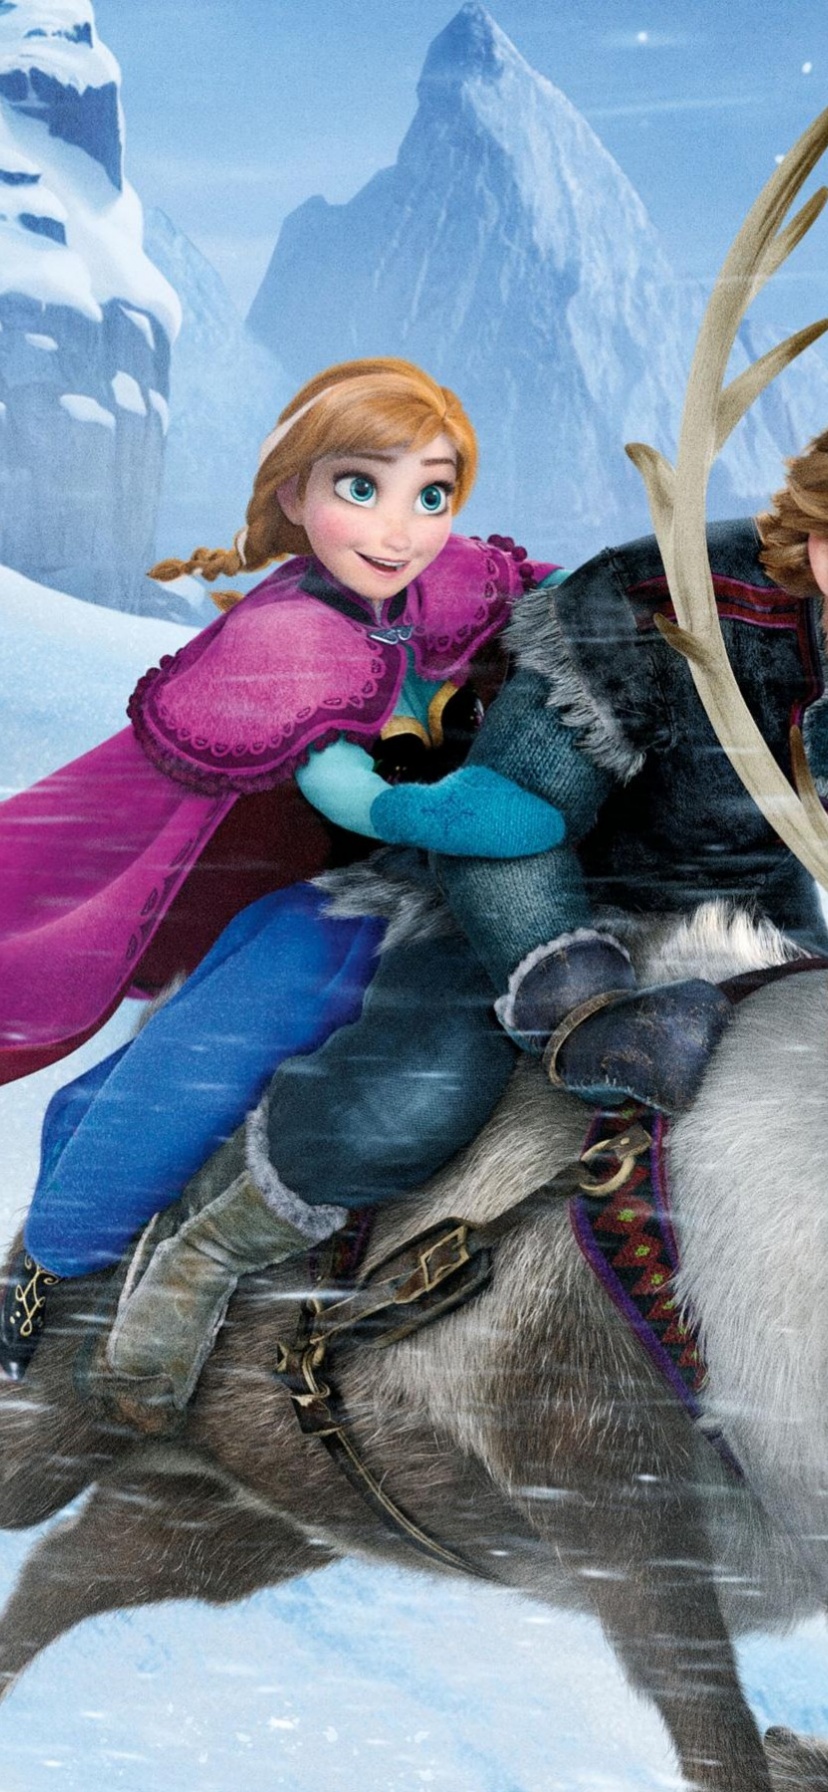 Frozen - Animated Film